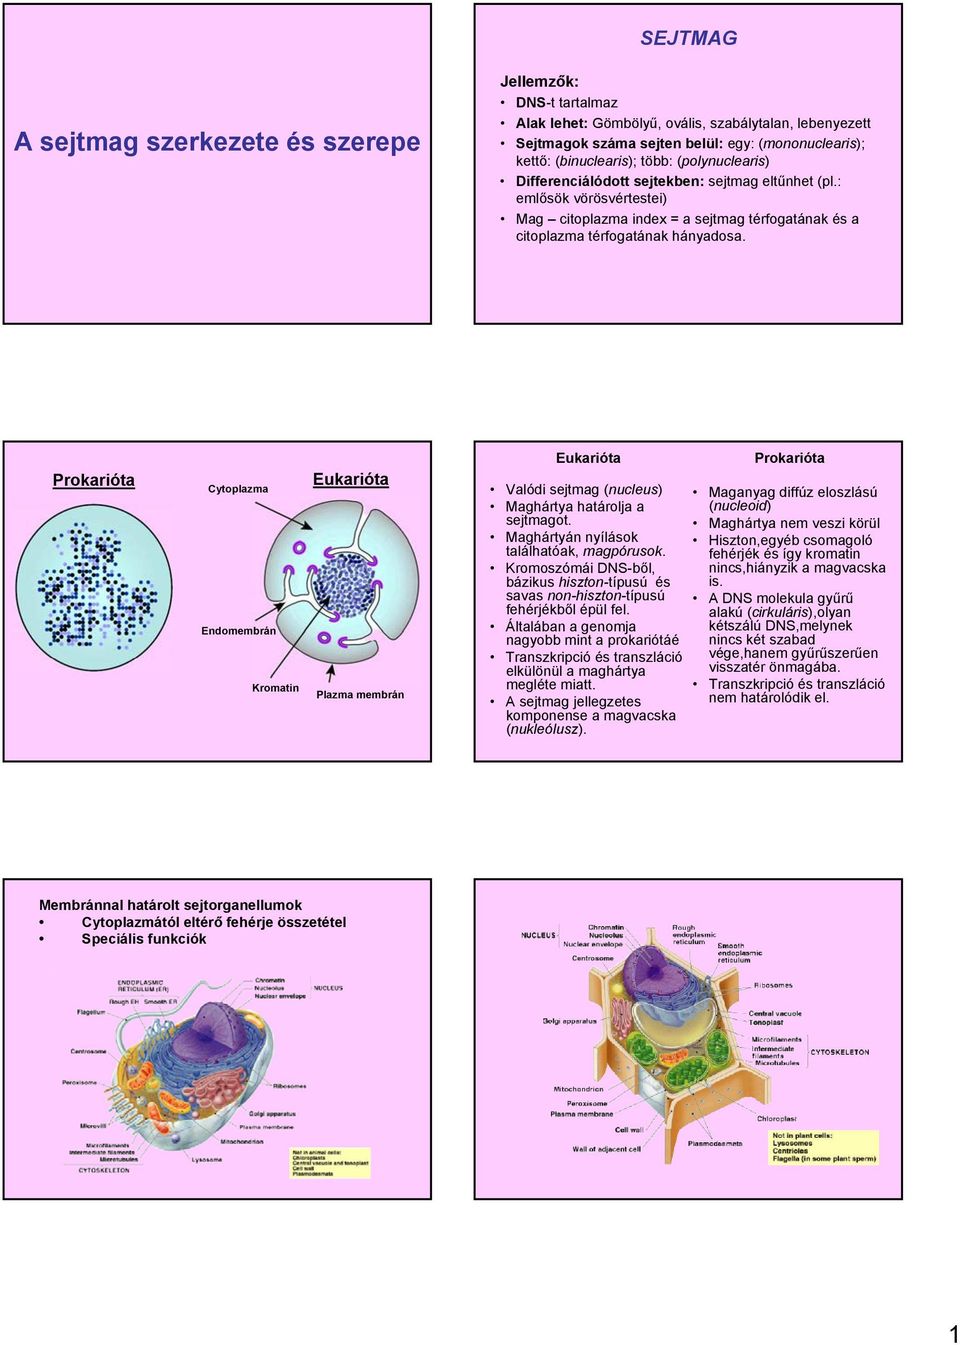 A sejtmag szerkezete és szerepe - PDF Ingyenes letöltés